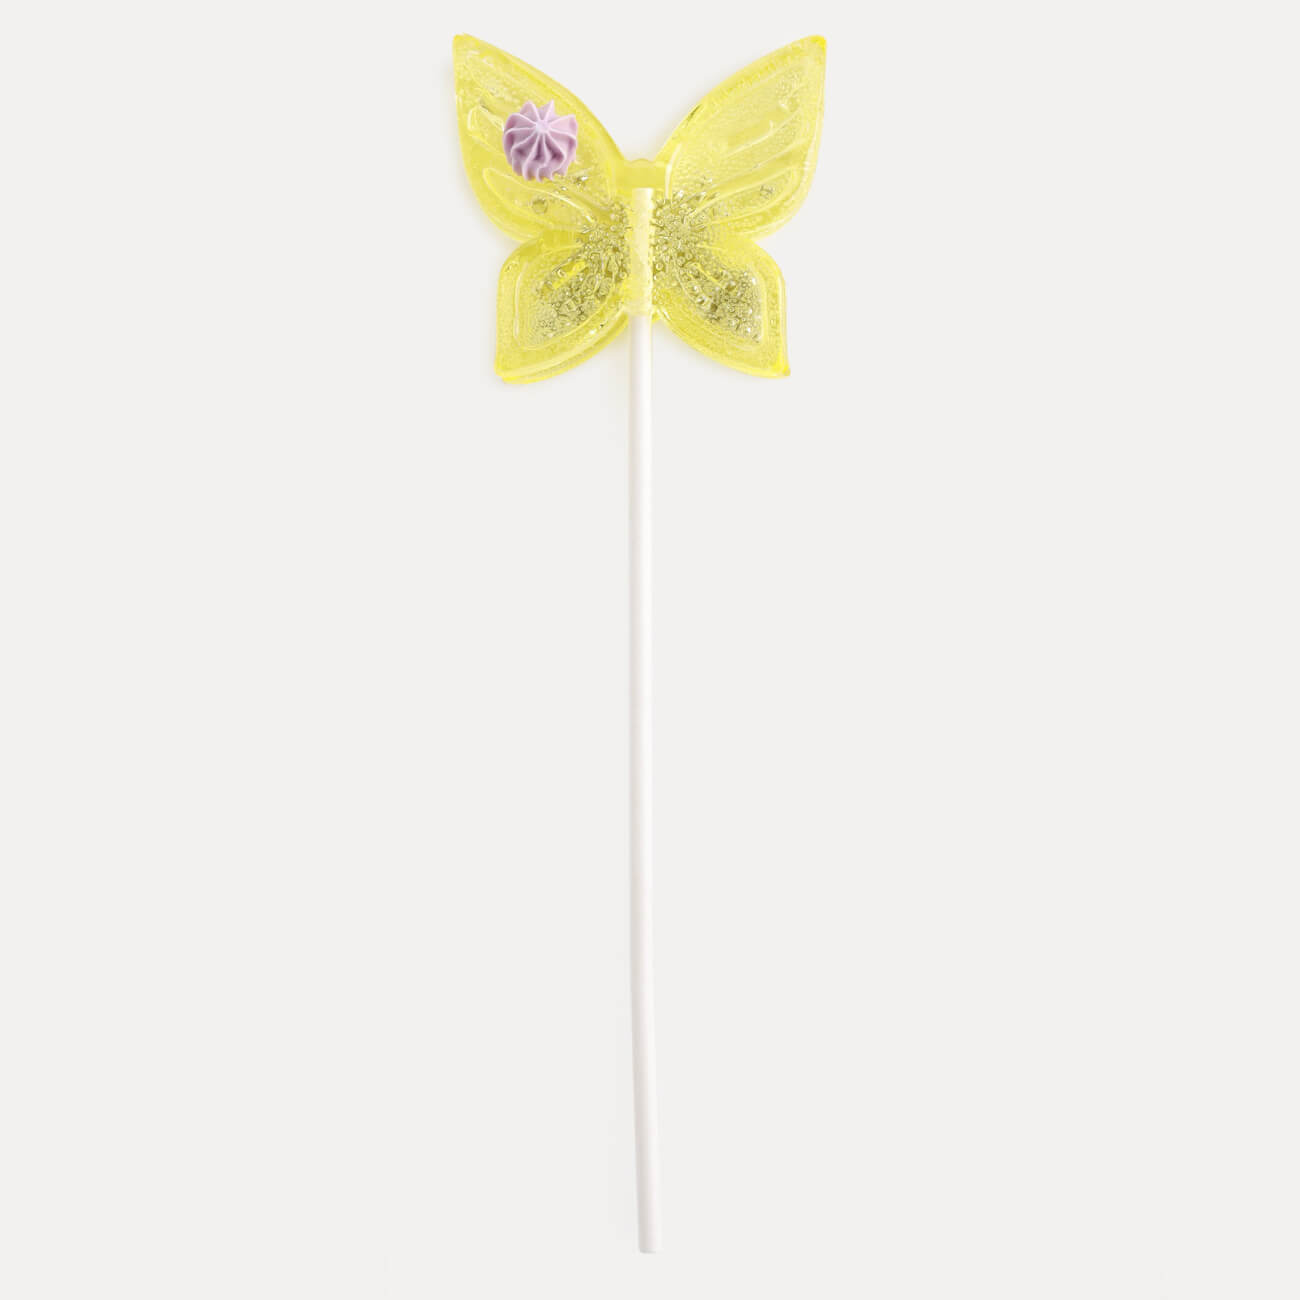 Леденец, 30 гр, погремушка, на палочке, изомальт, желтый, Бабочка, Butterfly